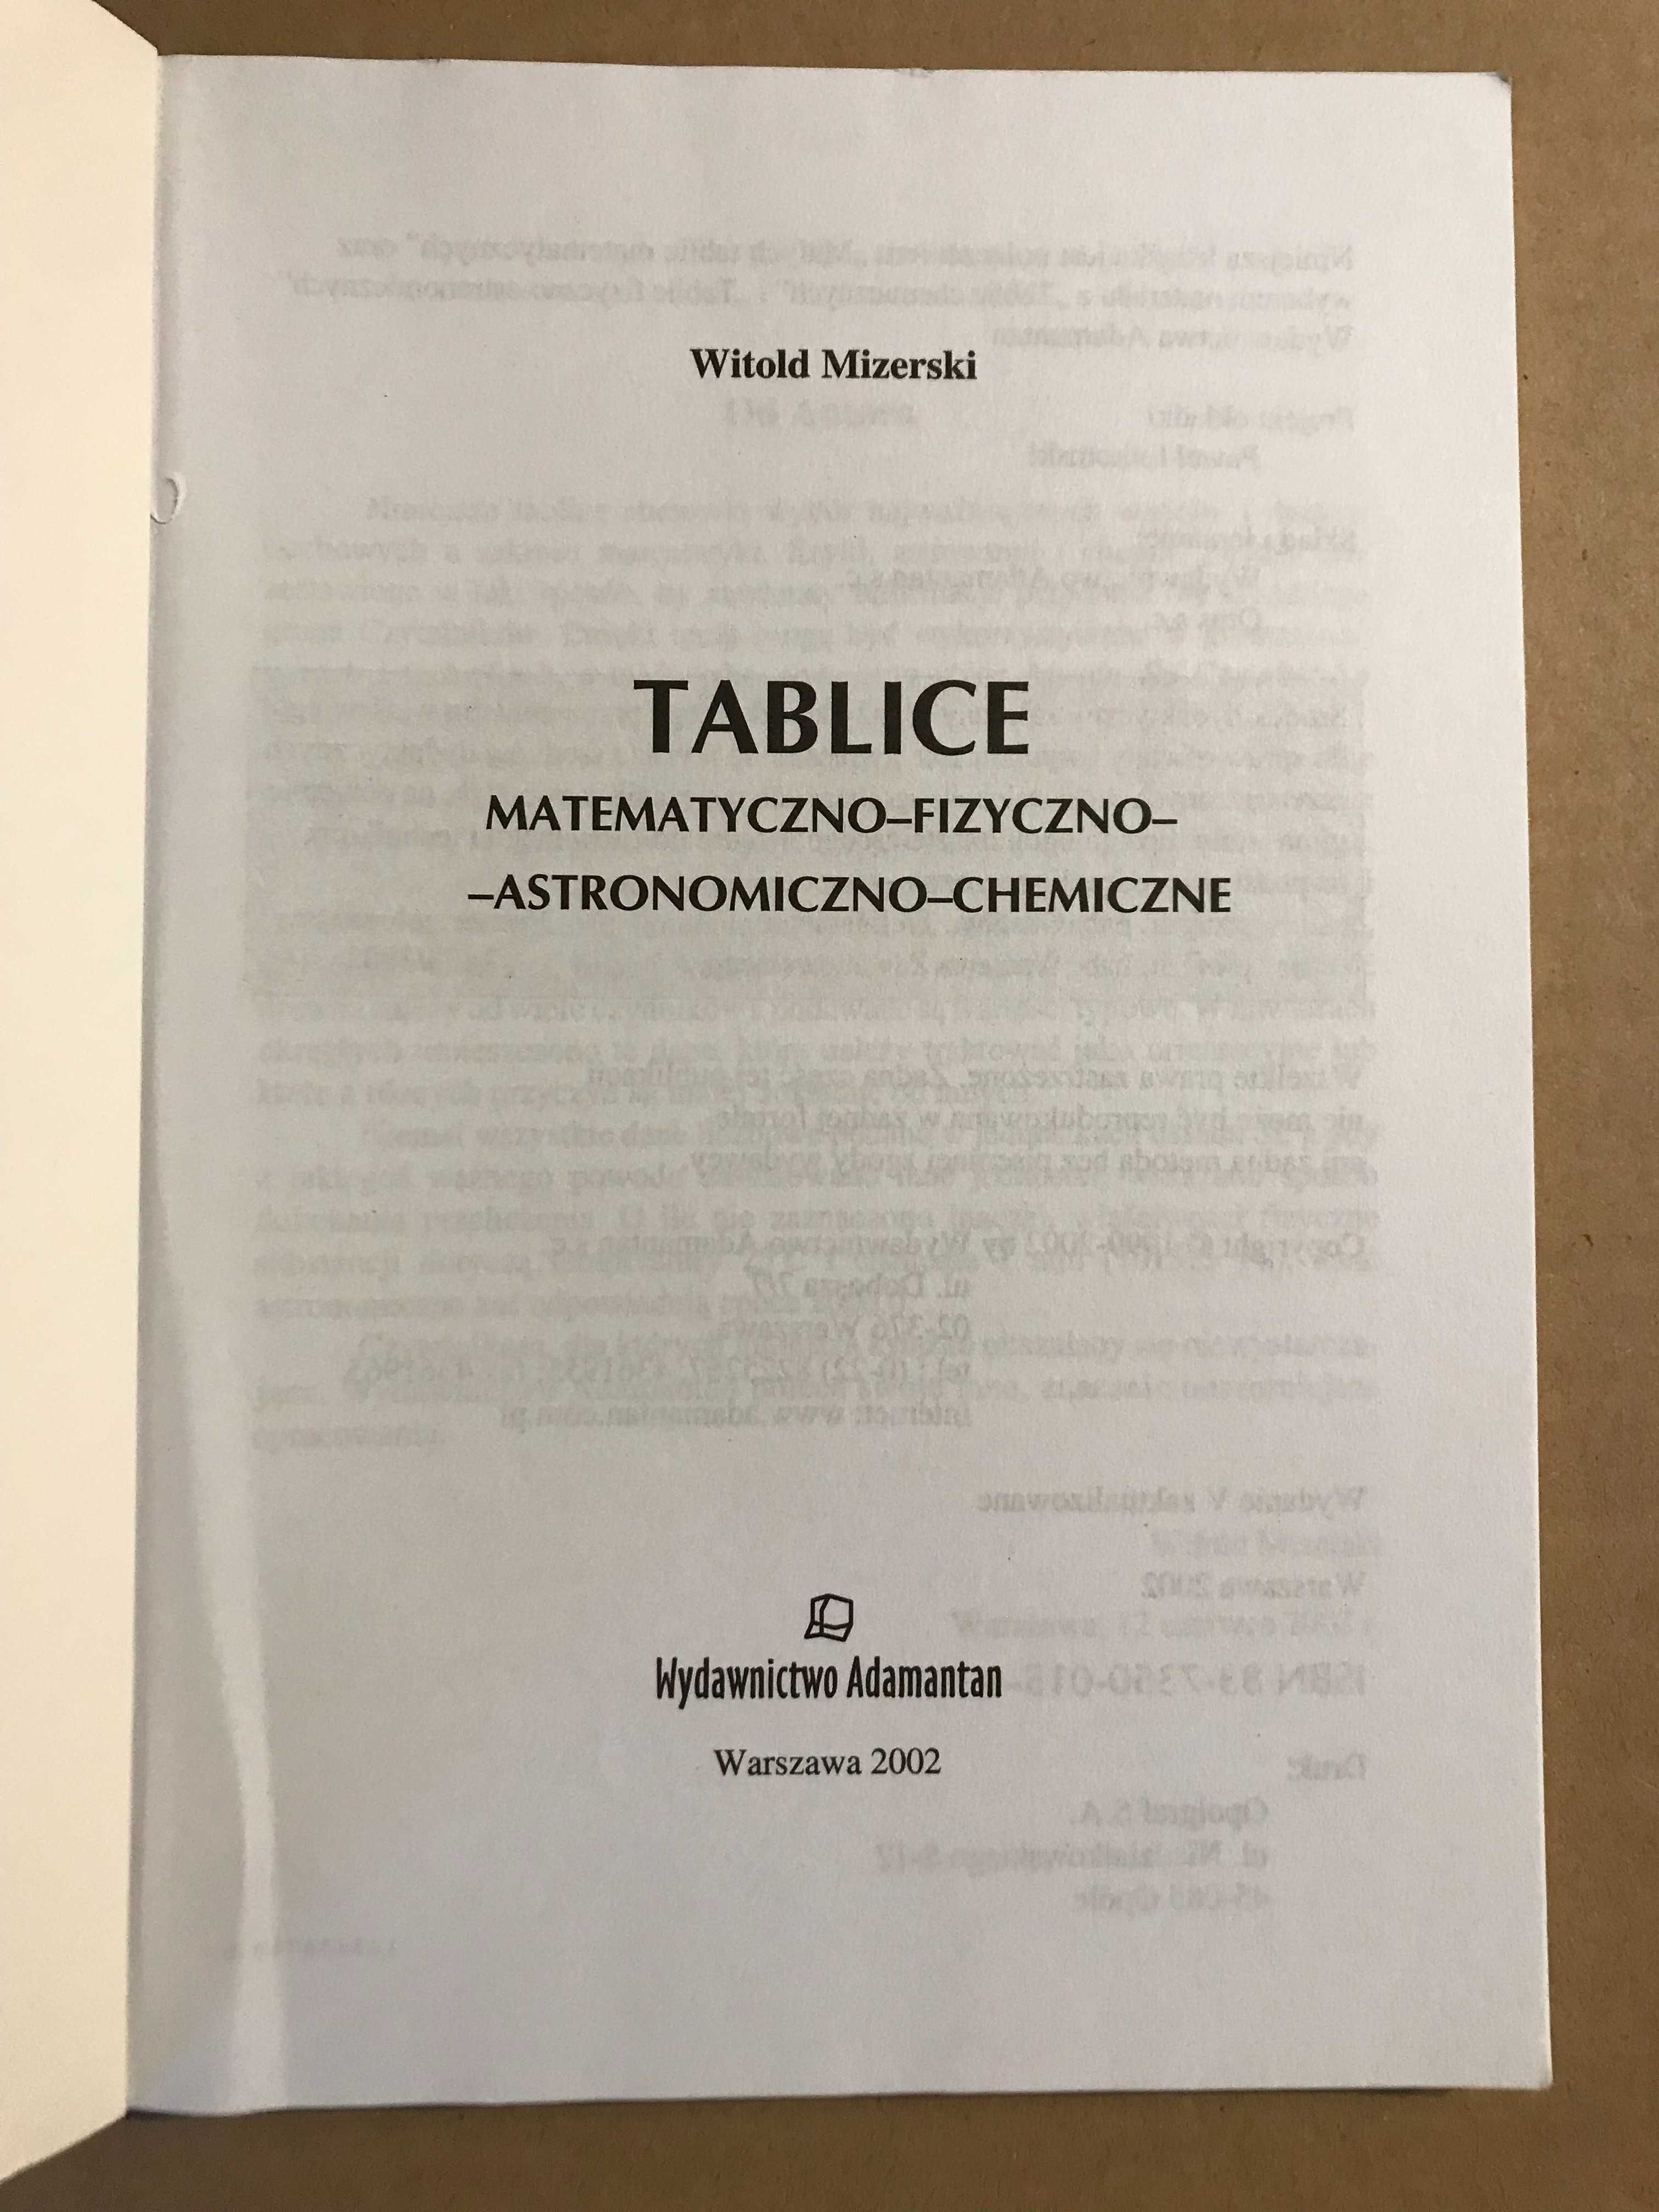 Tablice matematyczno-fizyczno-astronomiczno-chemiczne Witold Mizerski